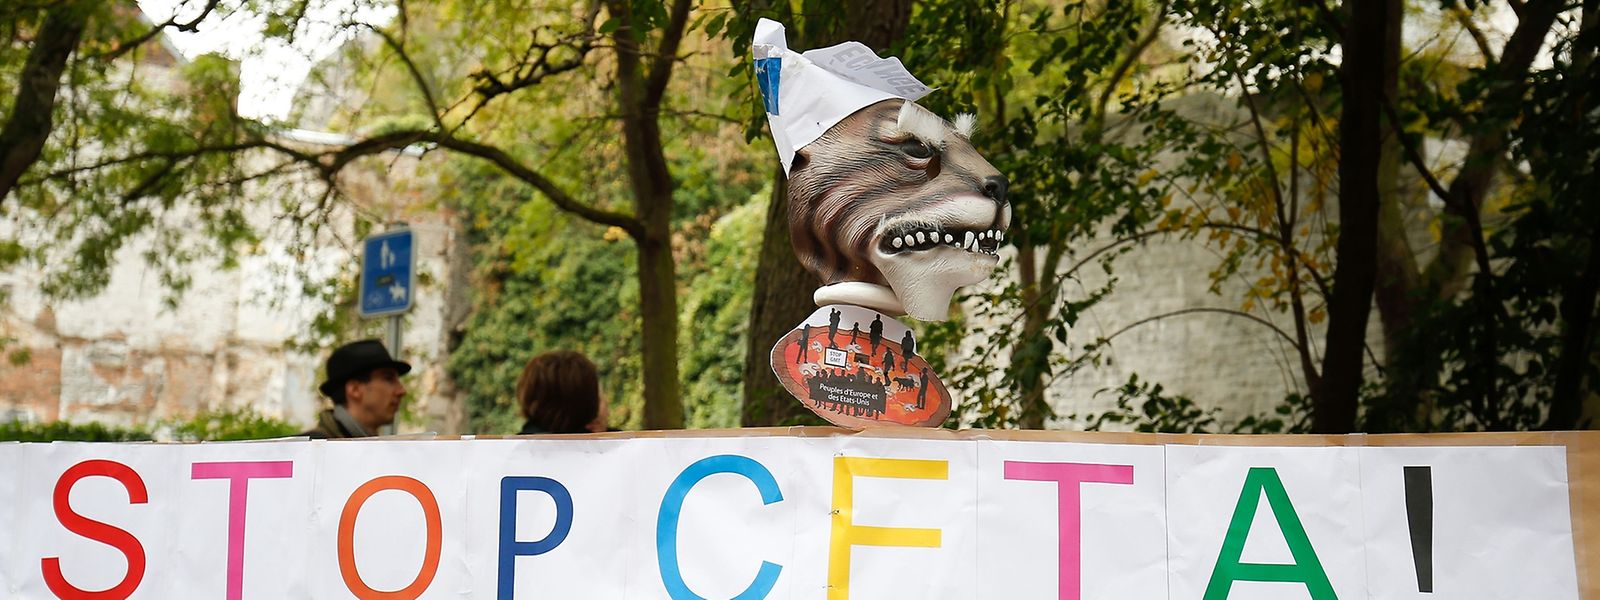 Die Anti-CETA-Proteste vor dem wallonischen Regionalparlament in Namur waren offensichtlich erfolgreich. 